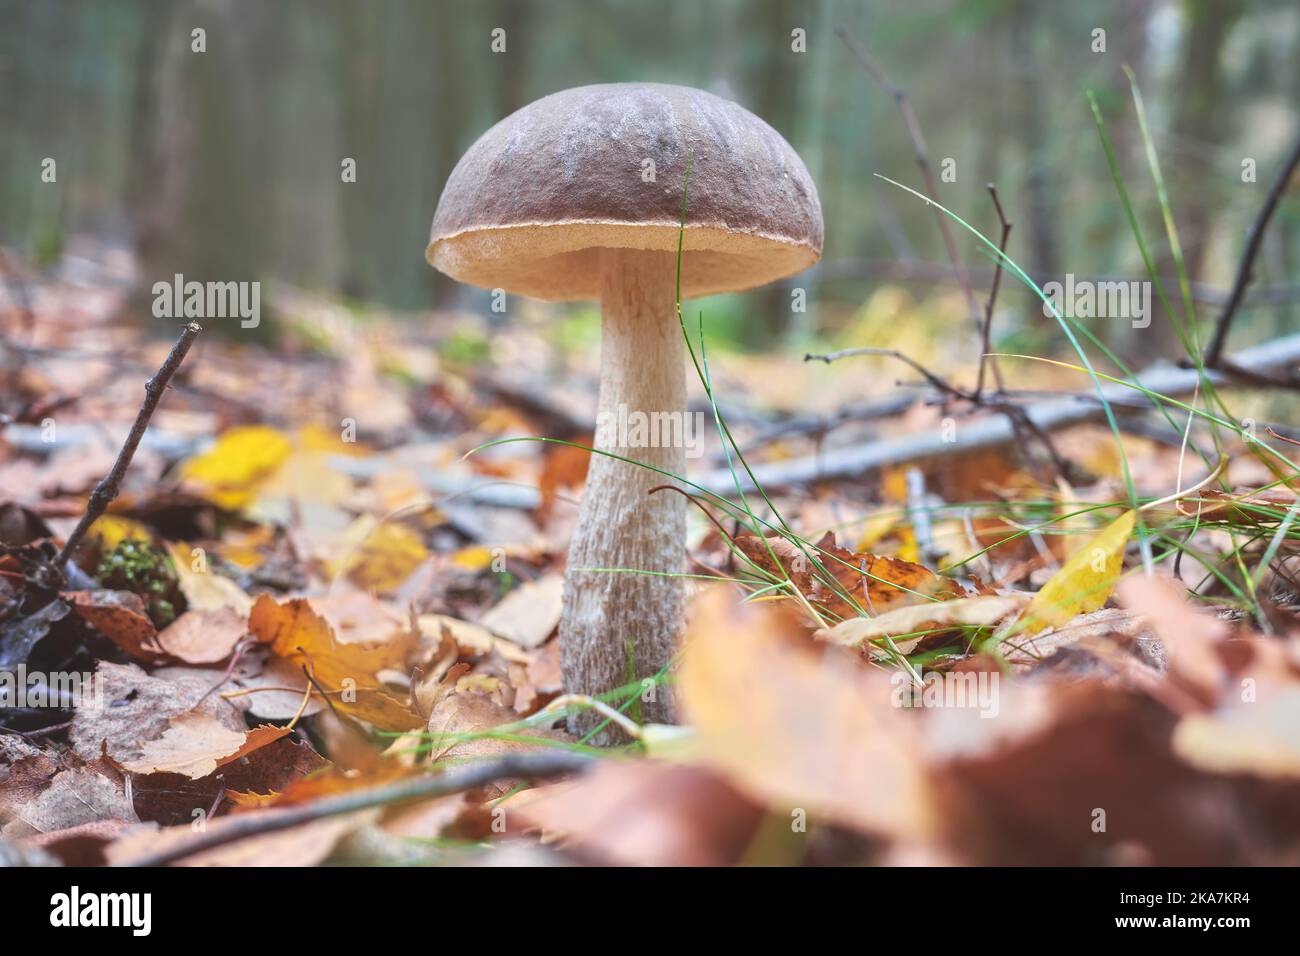 Primo piano immagine di un fungo commestibile in una foresta, focalizzazione selettiva sulla calotta. Foto Stock